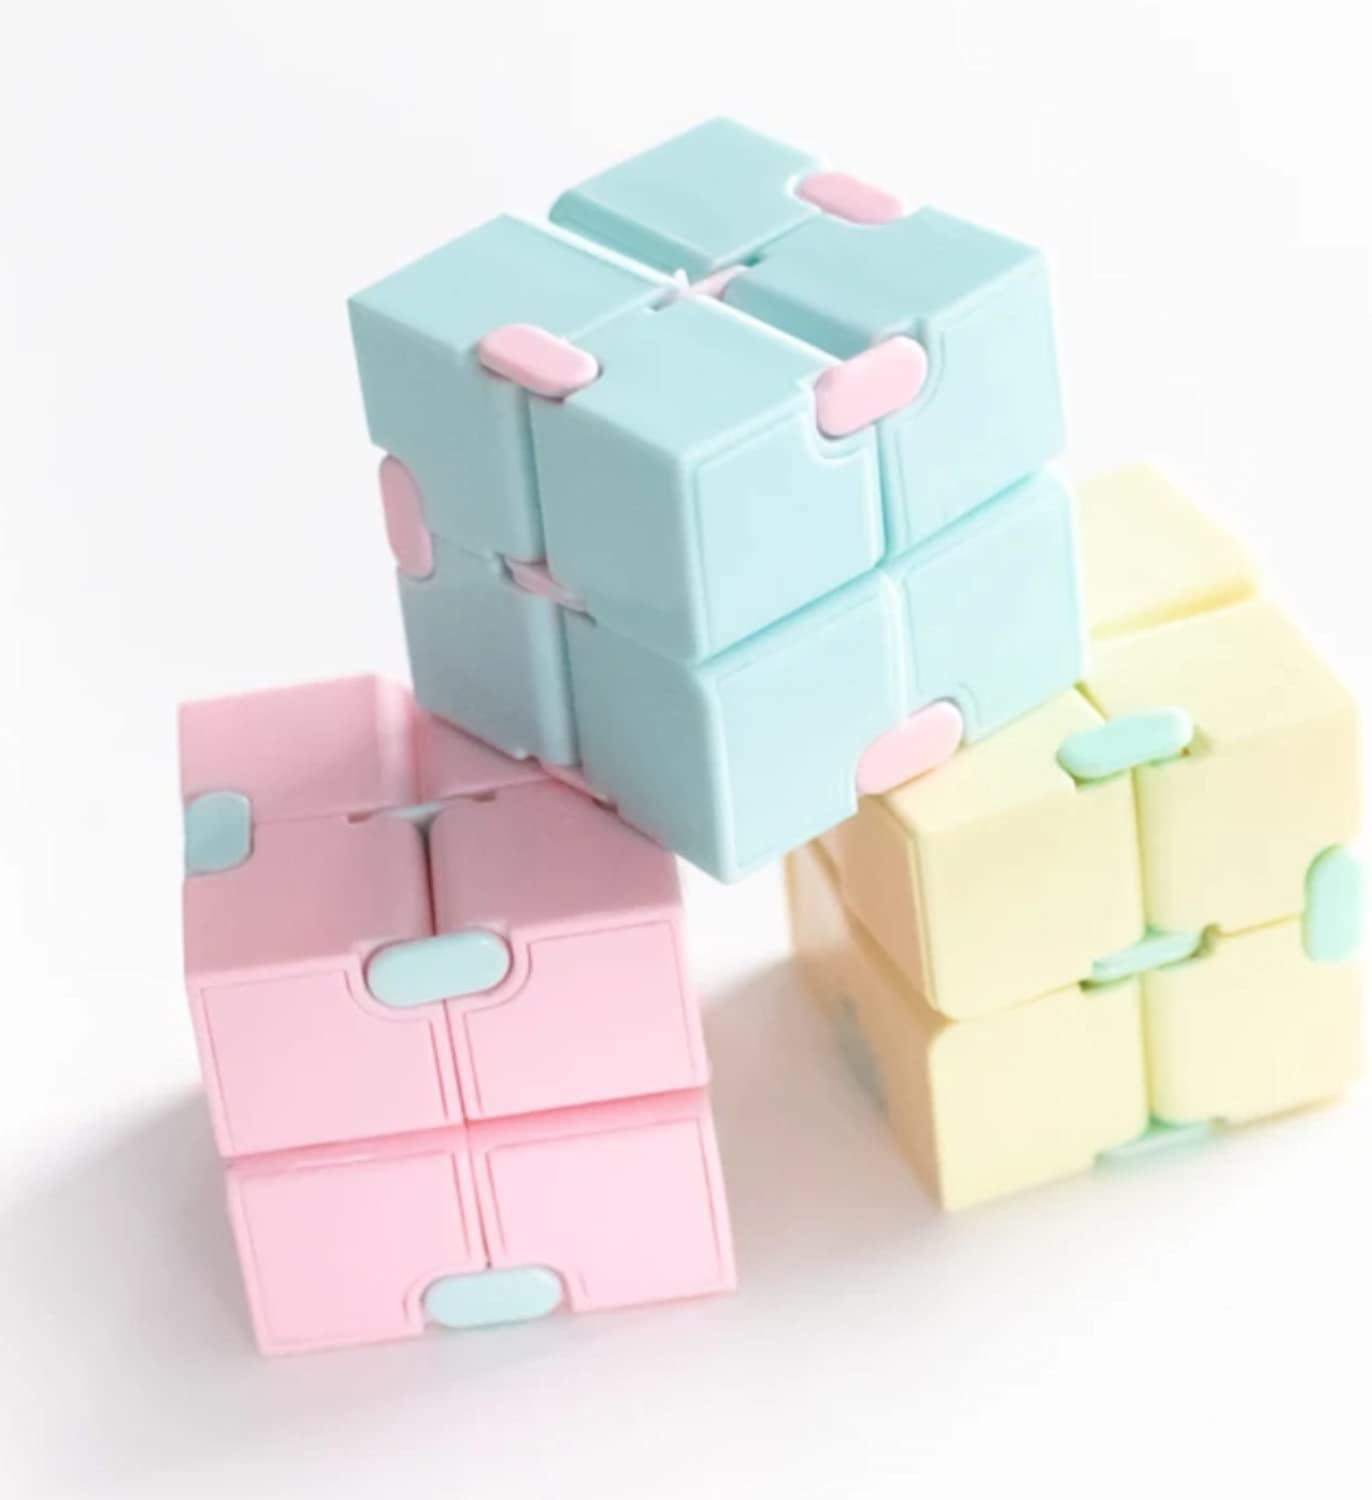 Chennyfun Fidget Sensory Toy Set, 30PCS Jouet Anti-Stress Kit, Cube